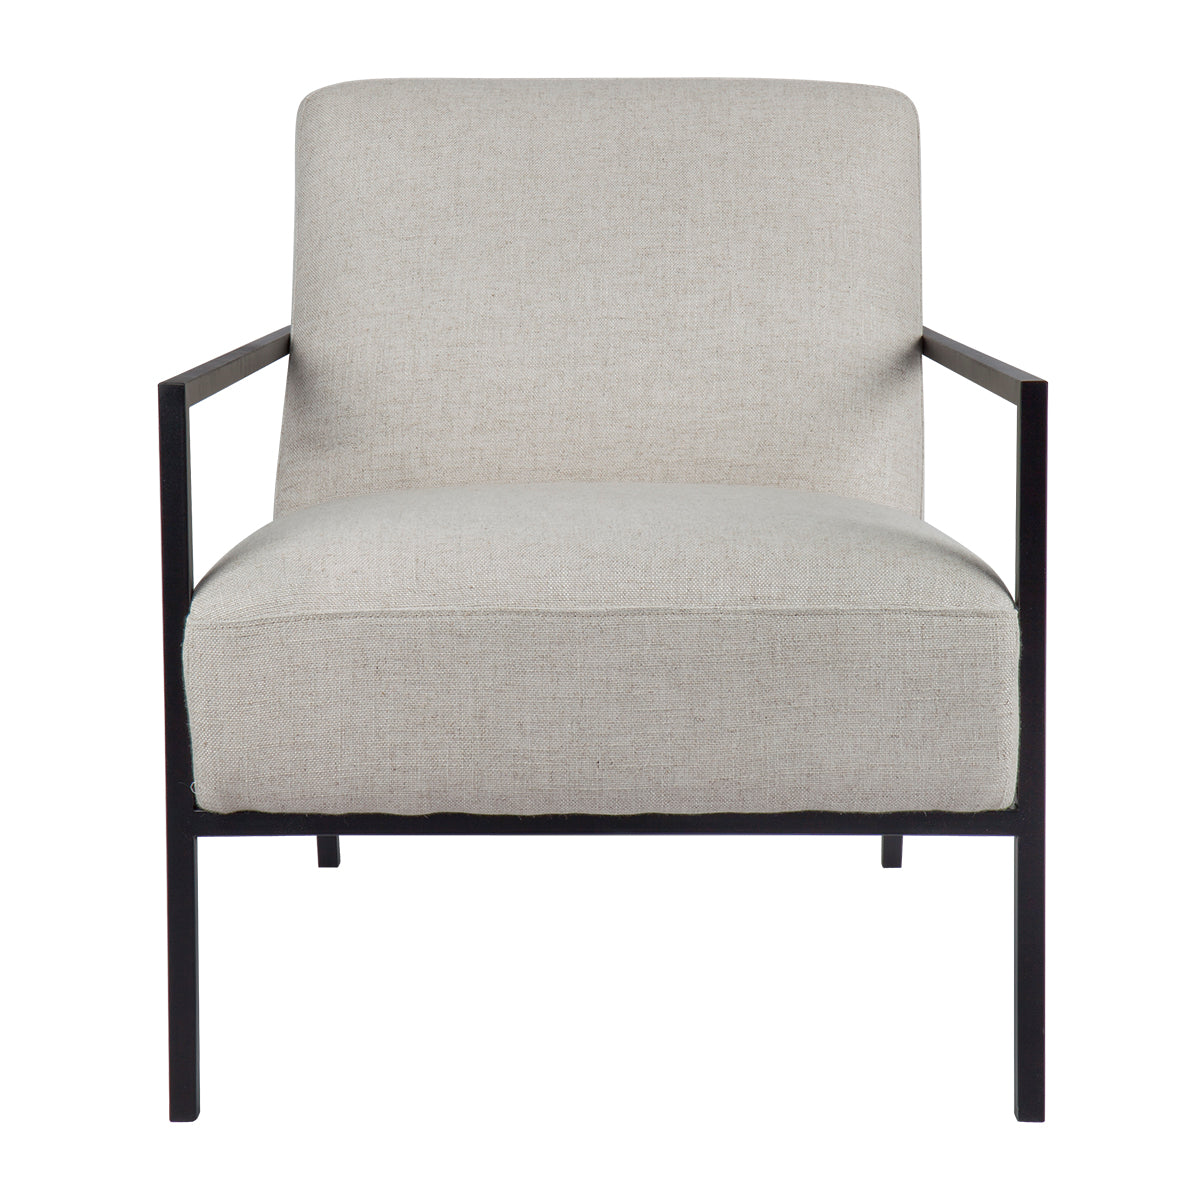 Hemming Arm Chair - Natural Linen